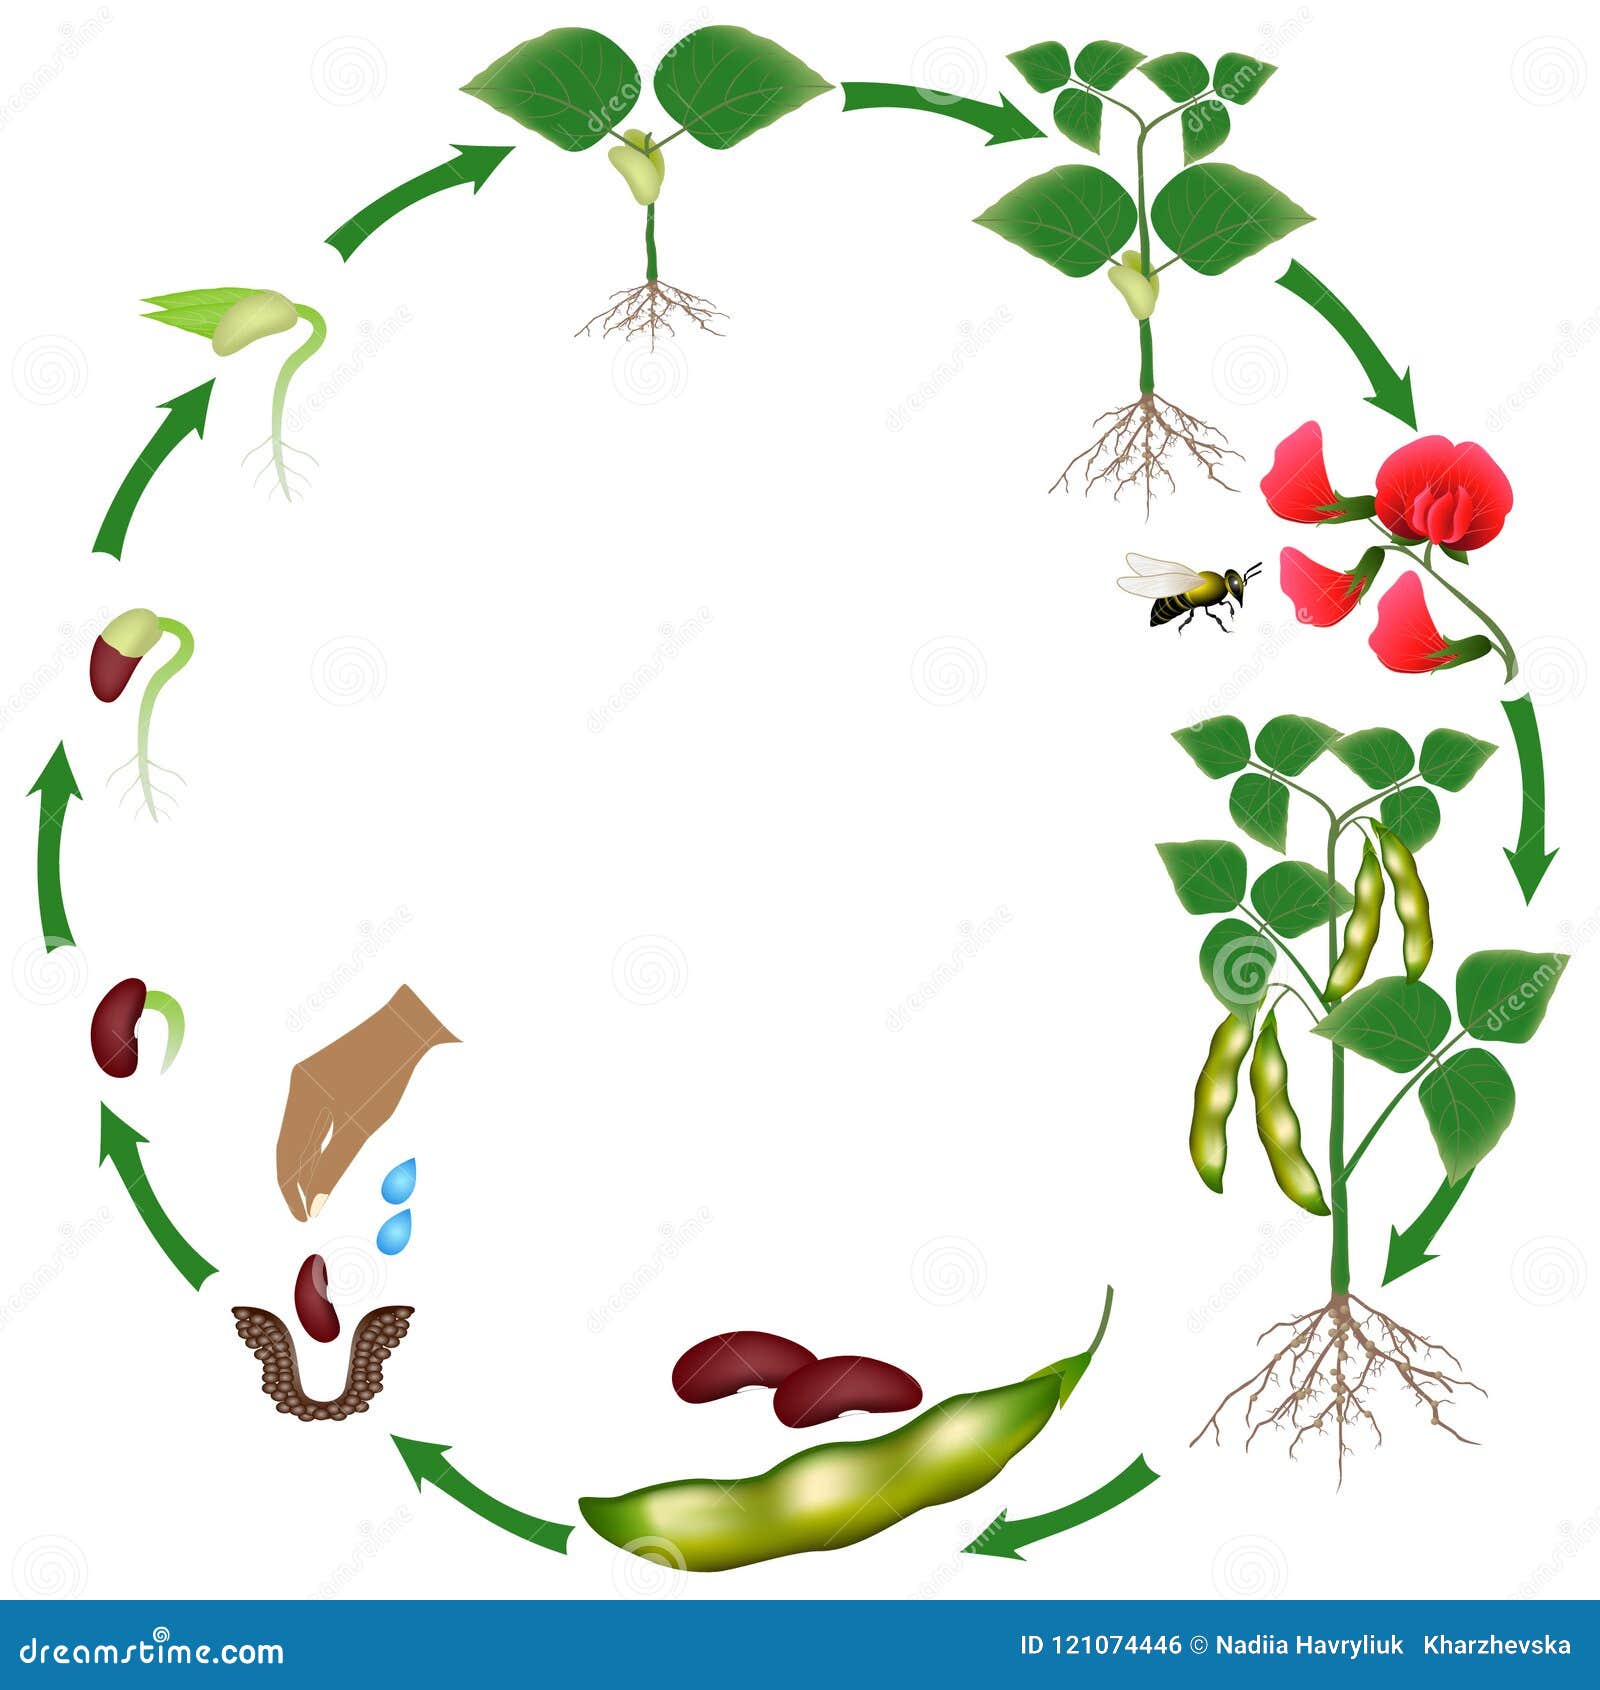 Жизненный цикл овощных растений по маркову. Жизненный цикл растений для дошкольников фасоль. Цикл развития фасоли. Цикл развития растений для дошкольников. Цикл роста гороха для детей.